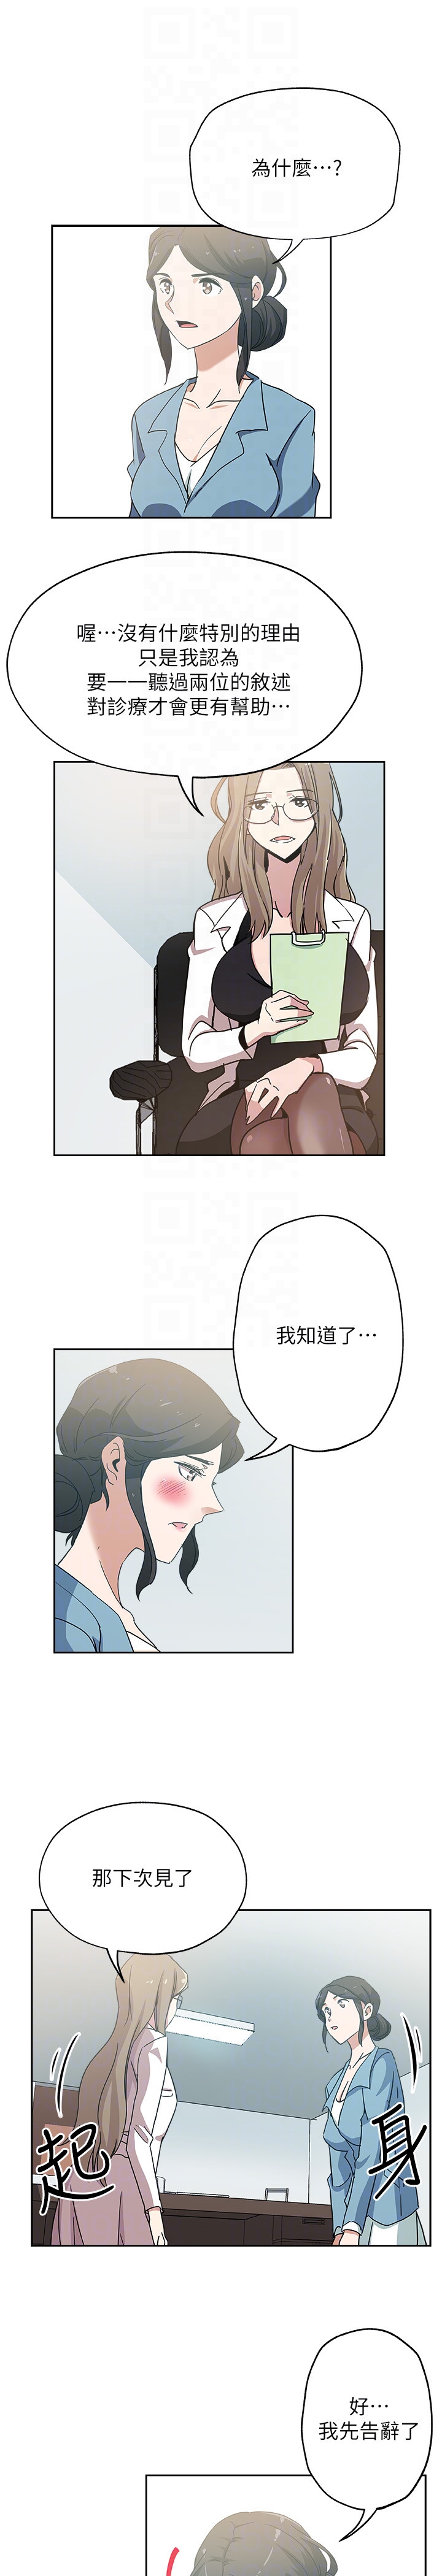 韩国污漫画 新媳婦 第19话-门外该不会是…? 19